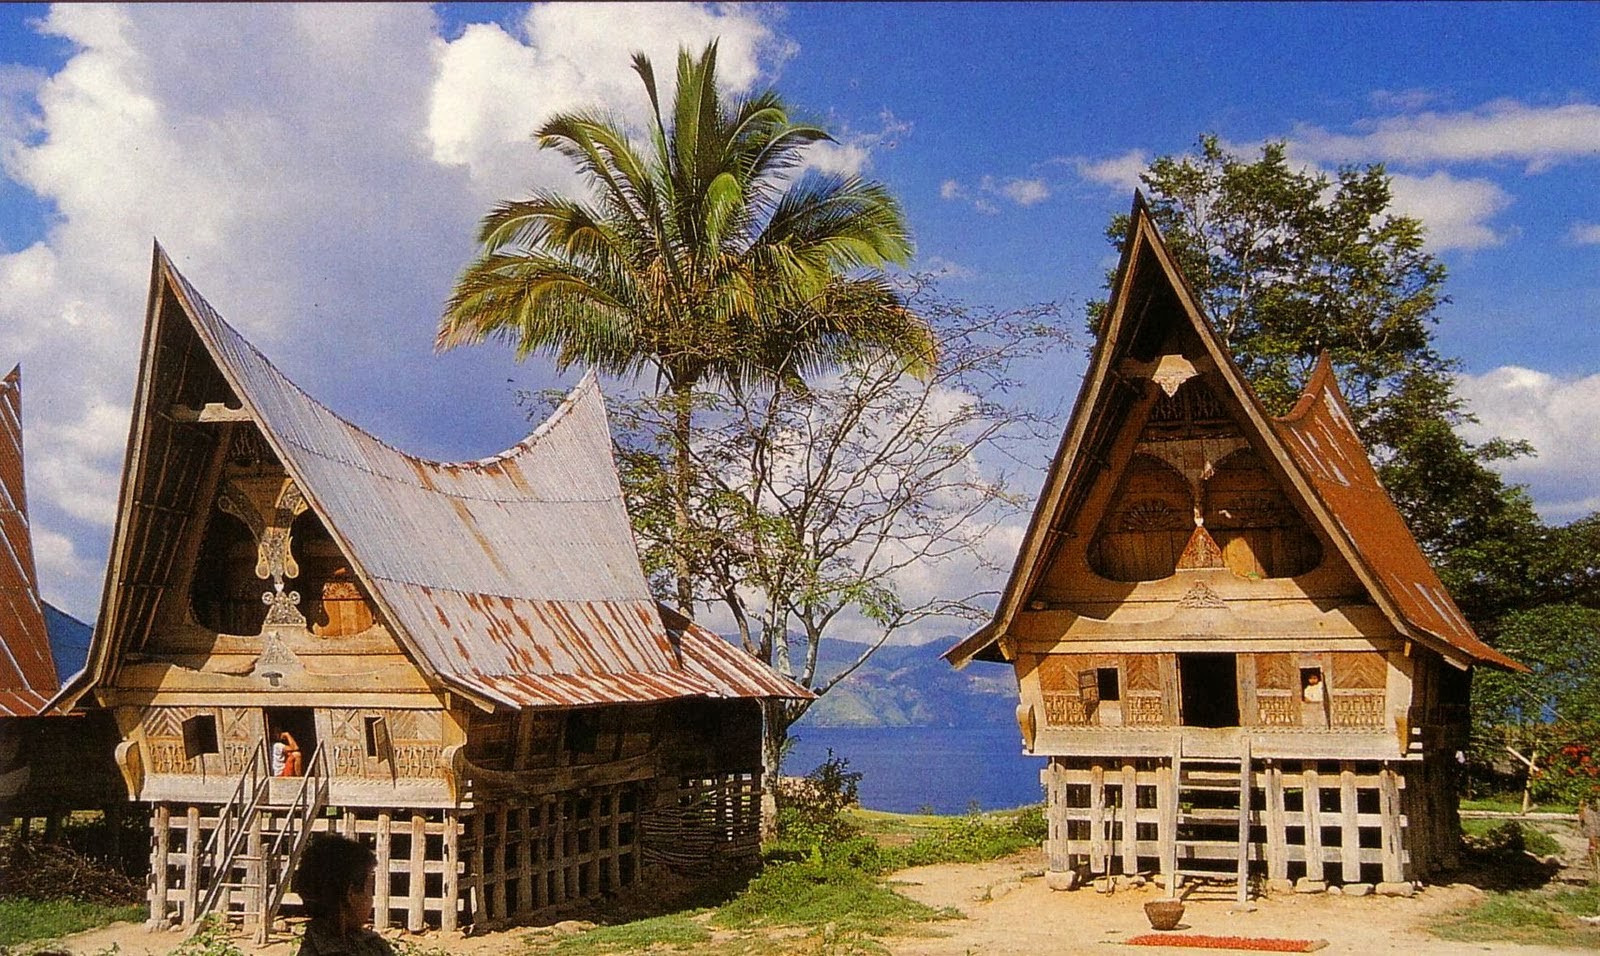 Gambar Rumah Adat Daerah Aceh  newhairstylesformen2014.com